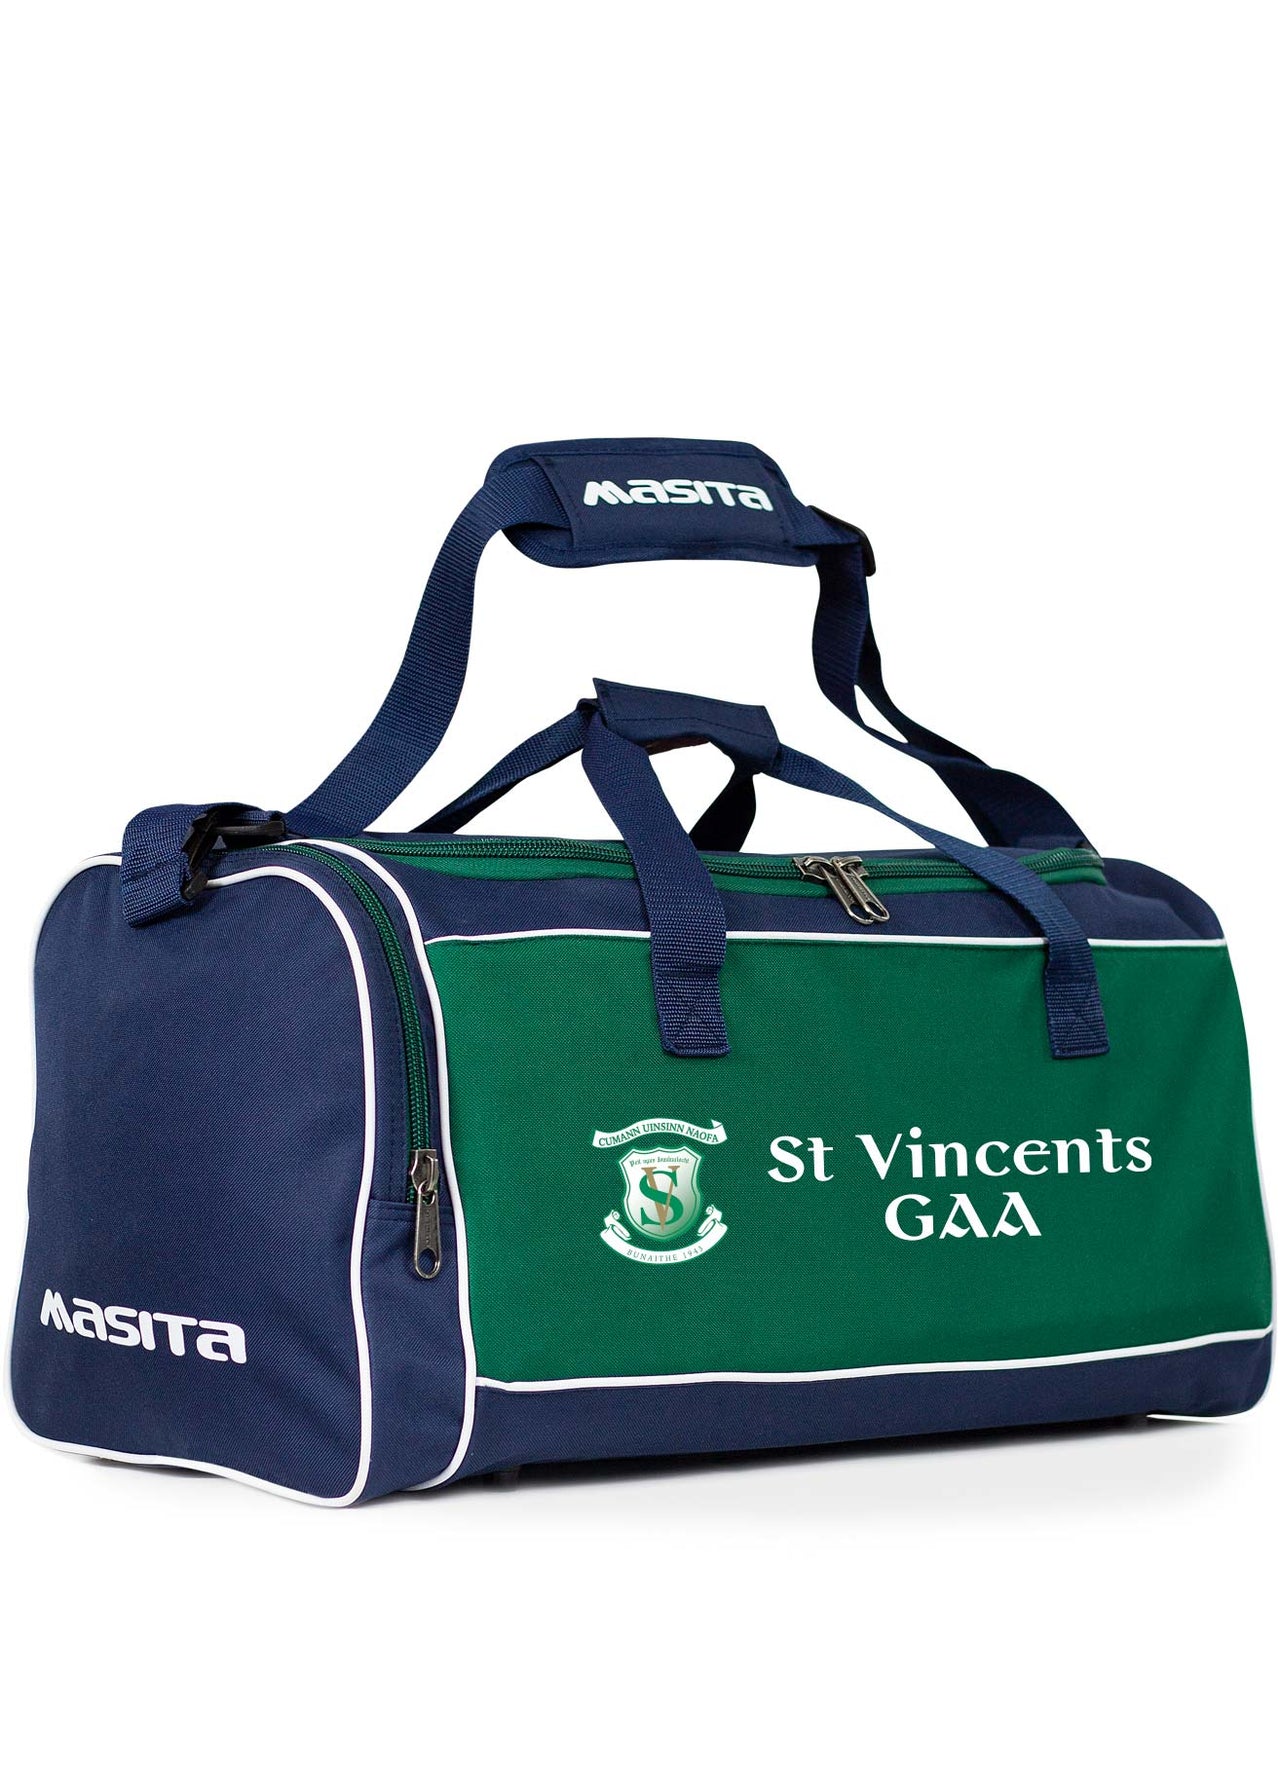 St Vincent's GAA Forza Bag Medium